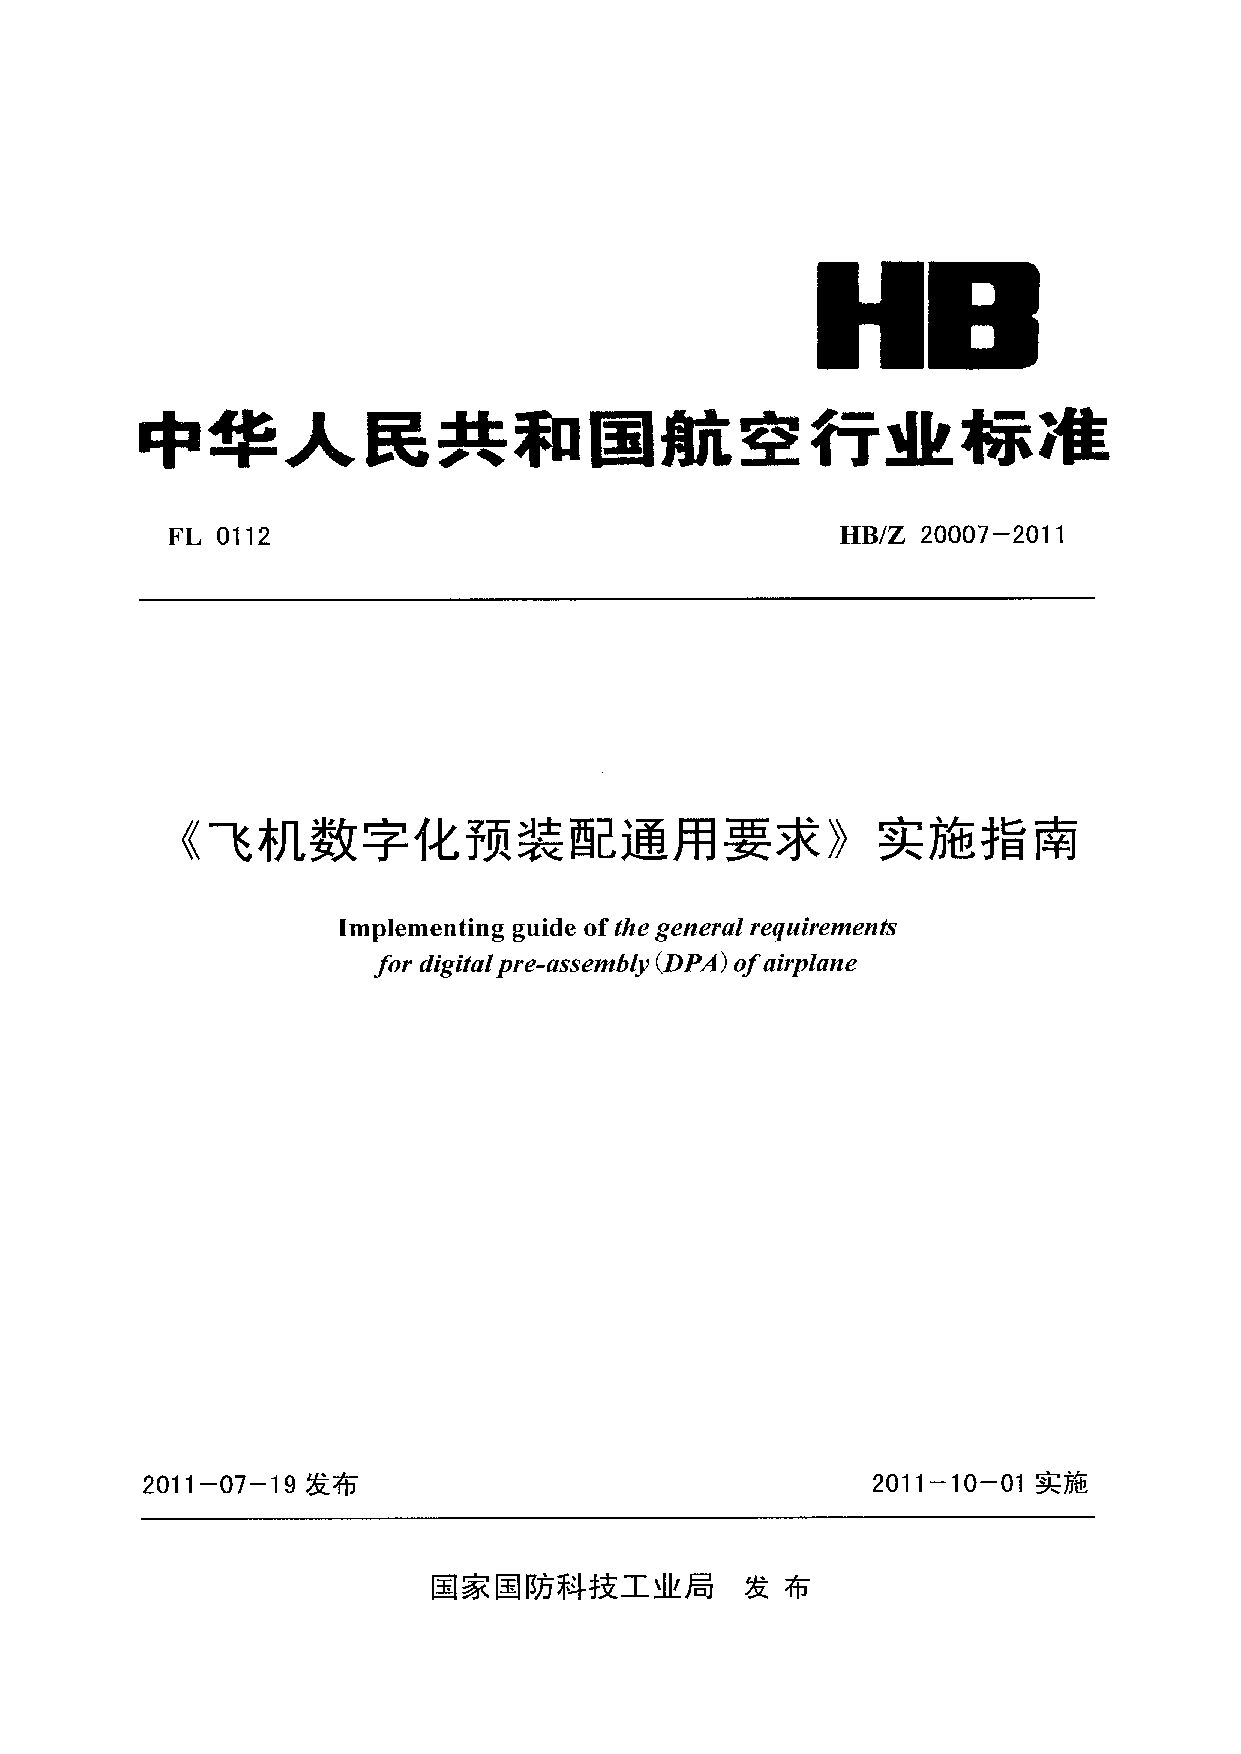 HB/Z 20007-2011封面图